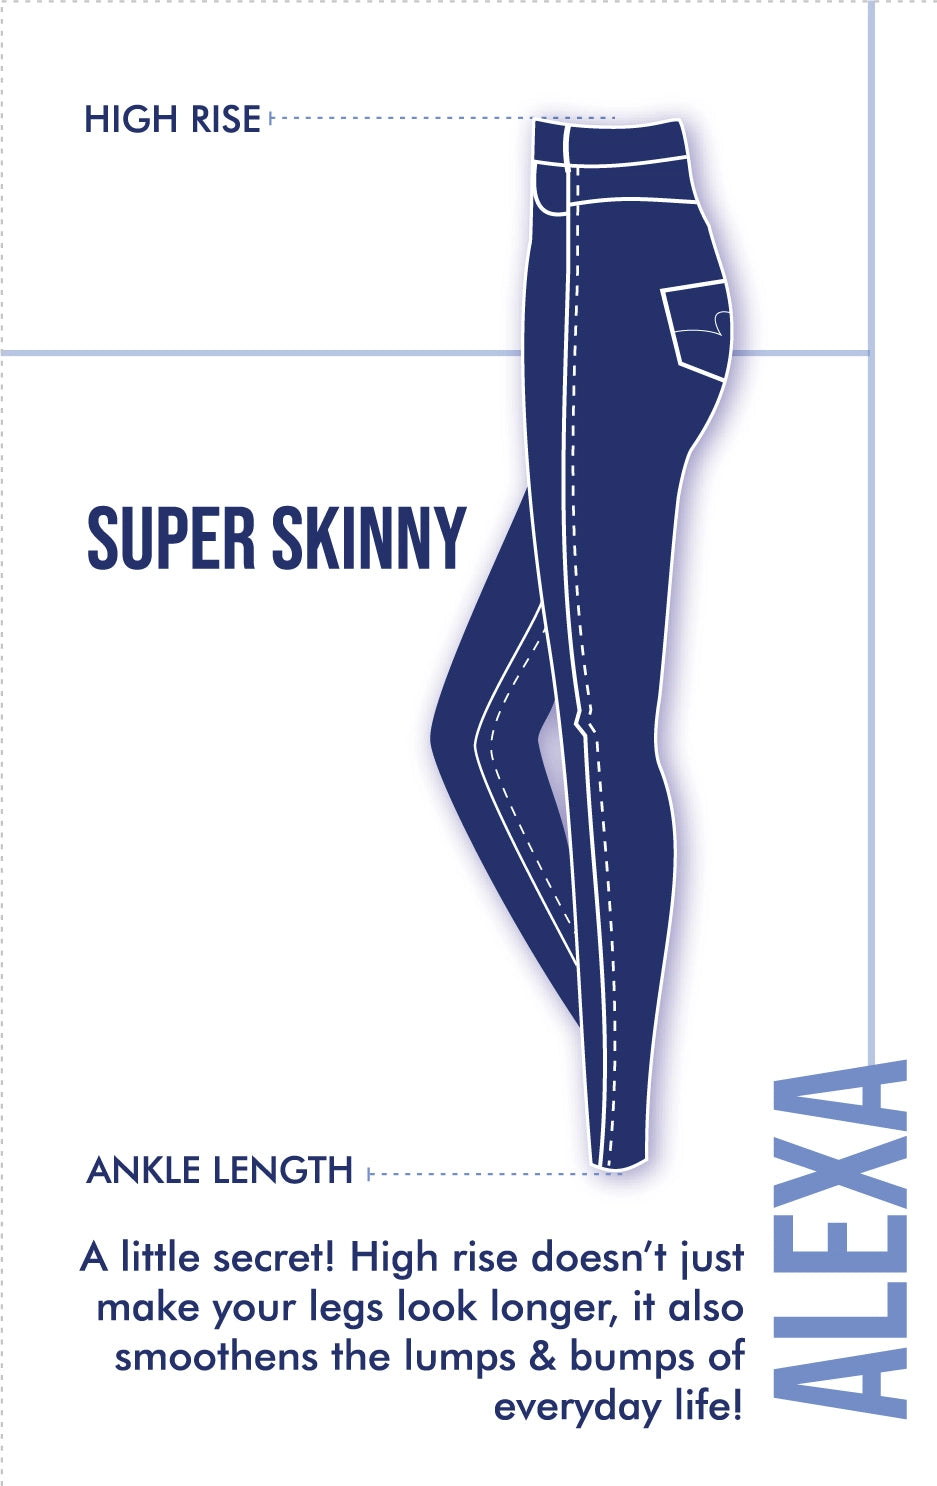 Spykar Women Light Blue Lycra Super Skinny Fit Ankle Length Clean Look Jeans -(Alexa)